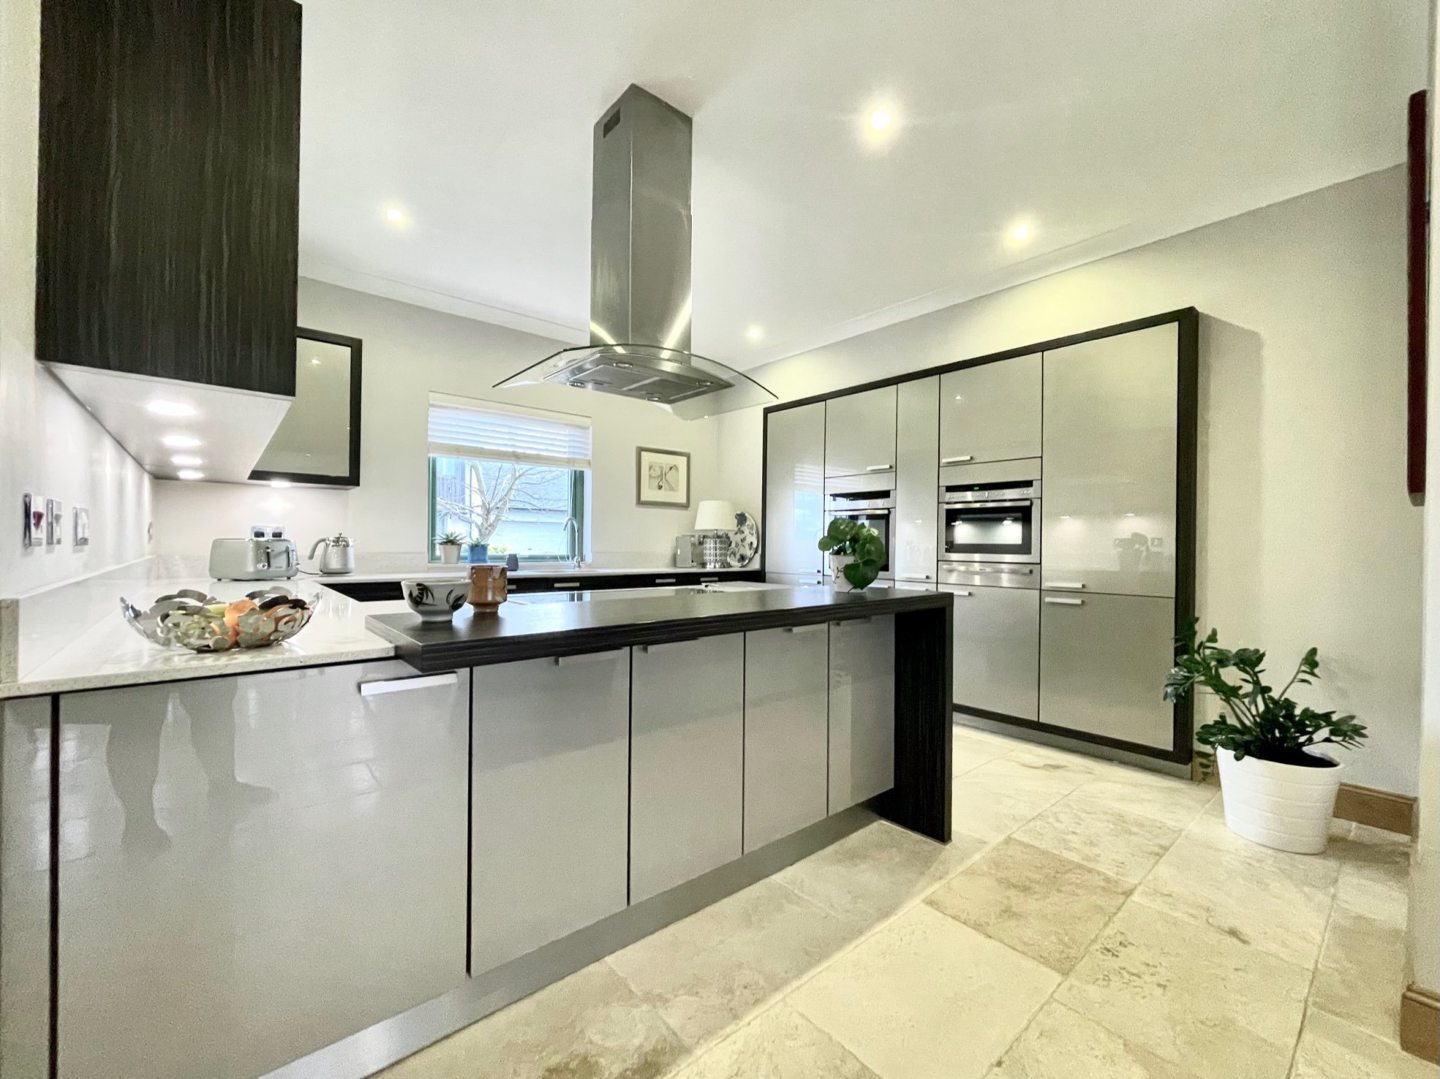 The modern grey kitchen